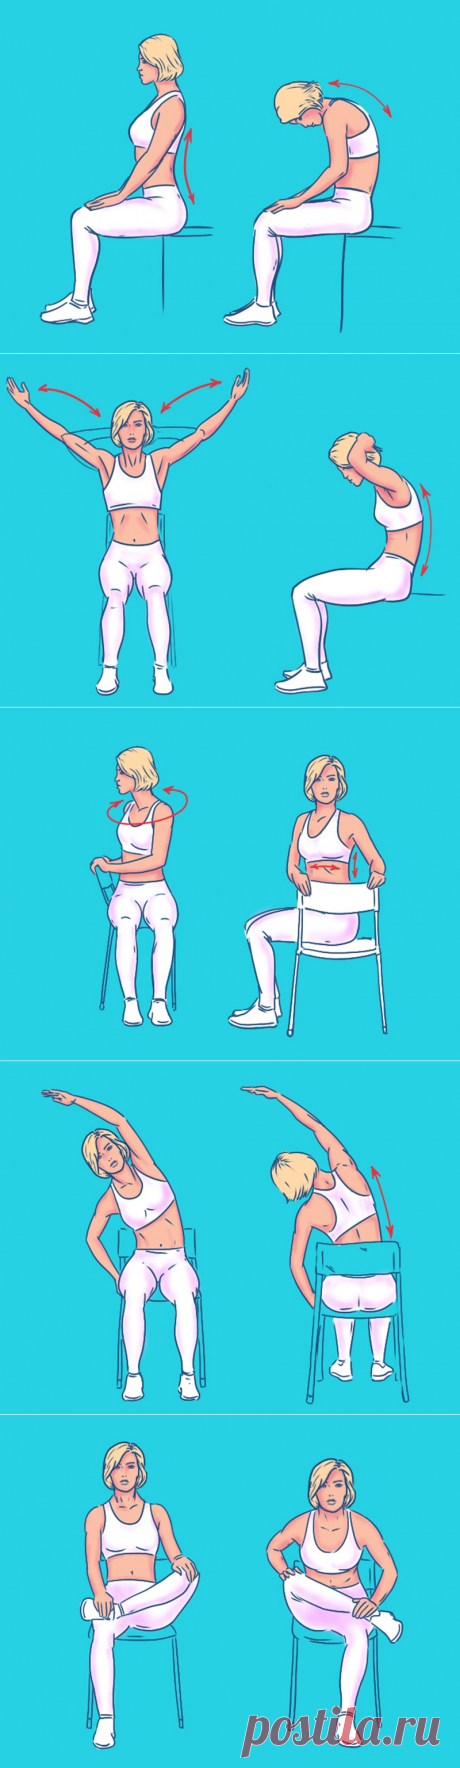 Пятерка упражнений для спины с эффектом массажа: как будто только что помял массажист — Копилочка полезных советов